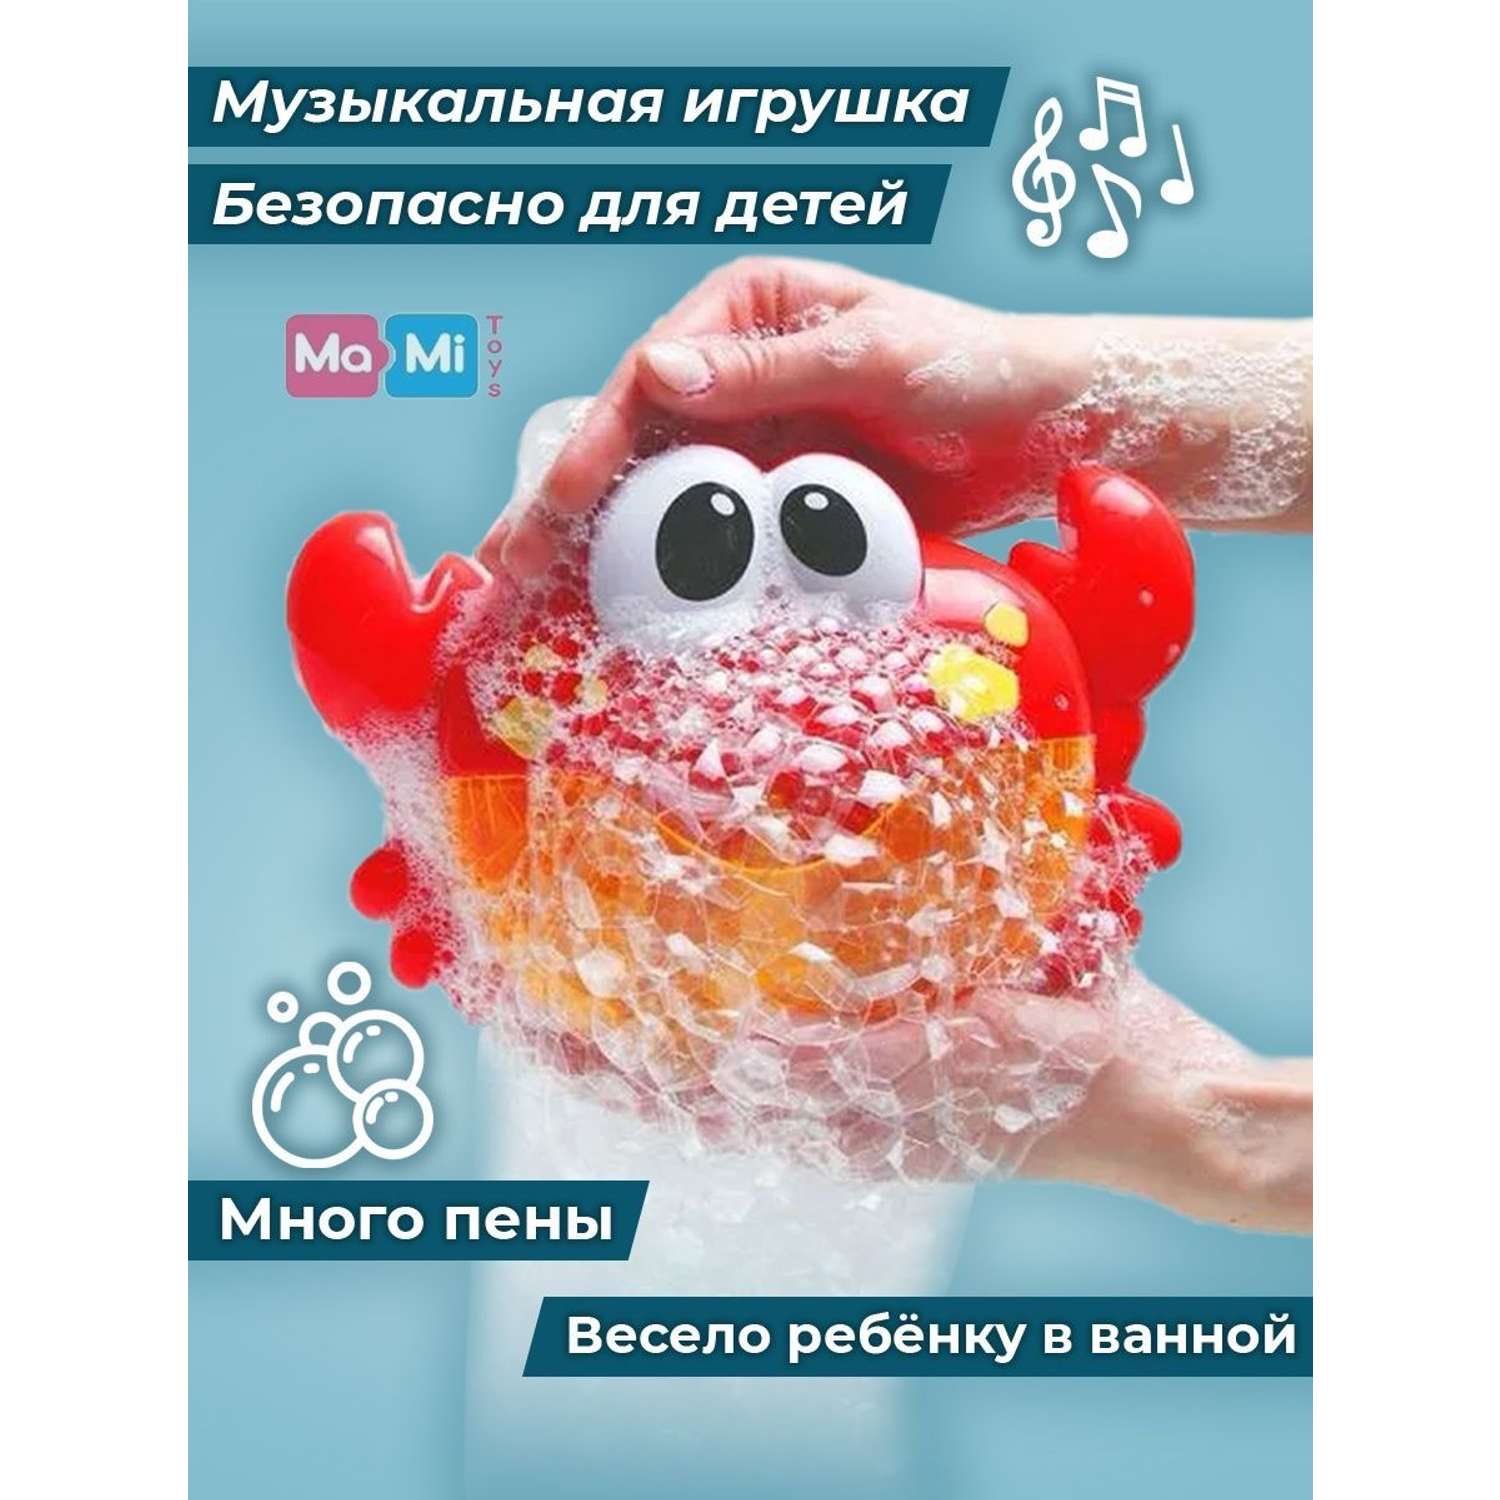 Игрушка для ванны Ma-Mi Toys Краб пенный генератор игрушки для купания - фото 4